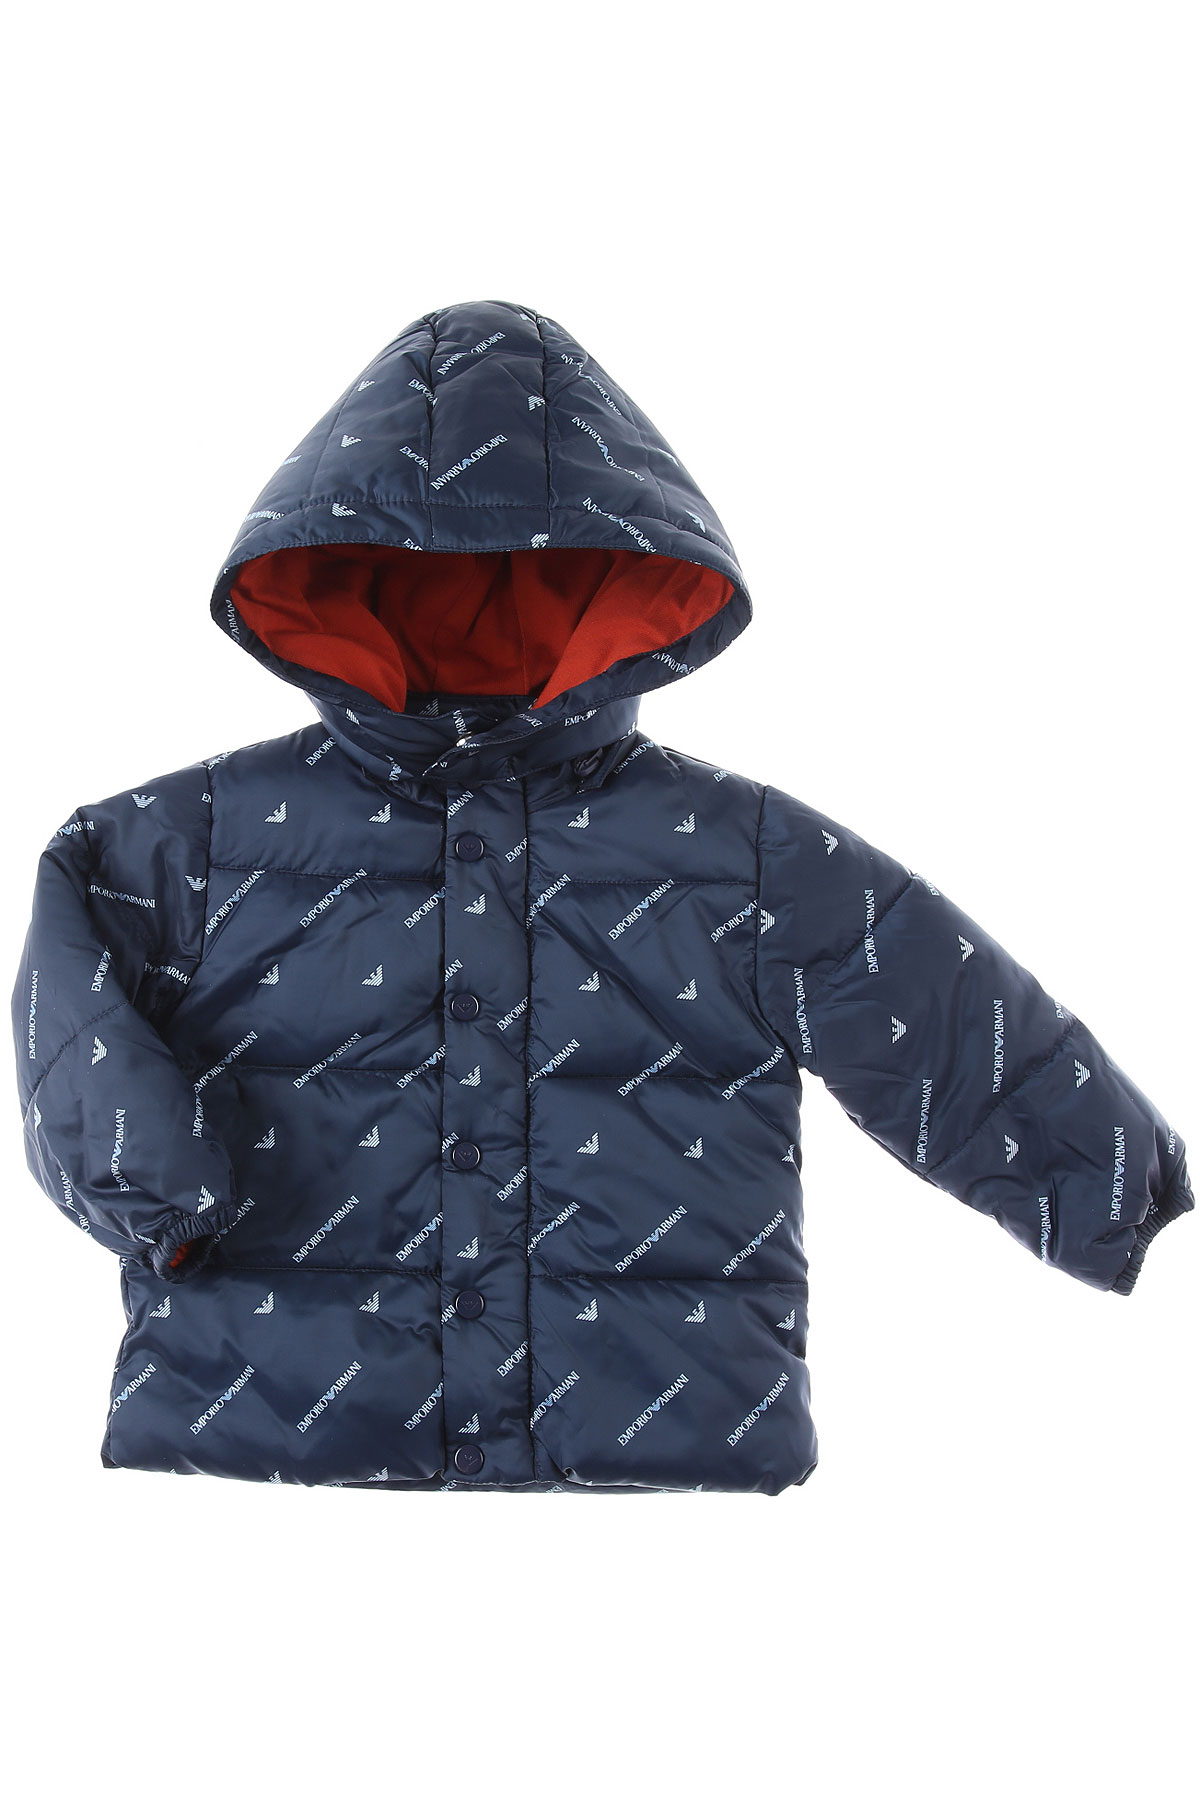 Emporio Armani Baby Daunen Jacke für Jungen Günstig im Sale, Blau, Polyester, 2017, 18M 2Y 3Y